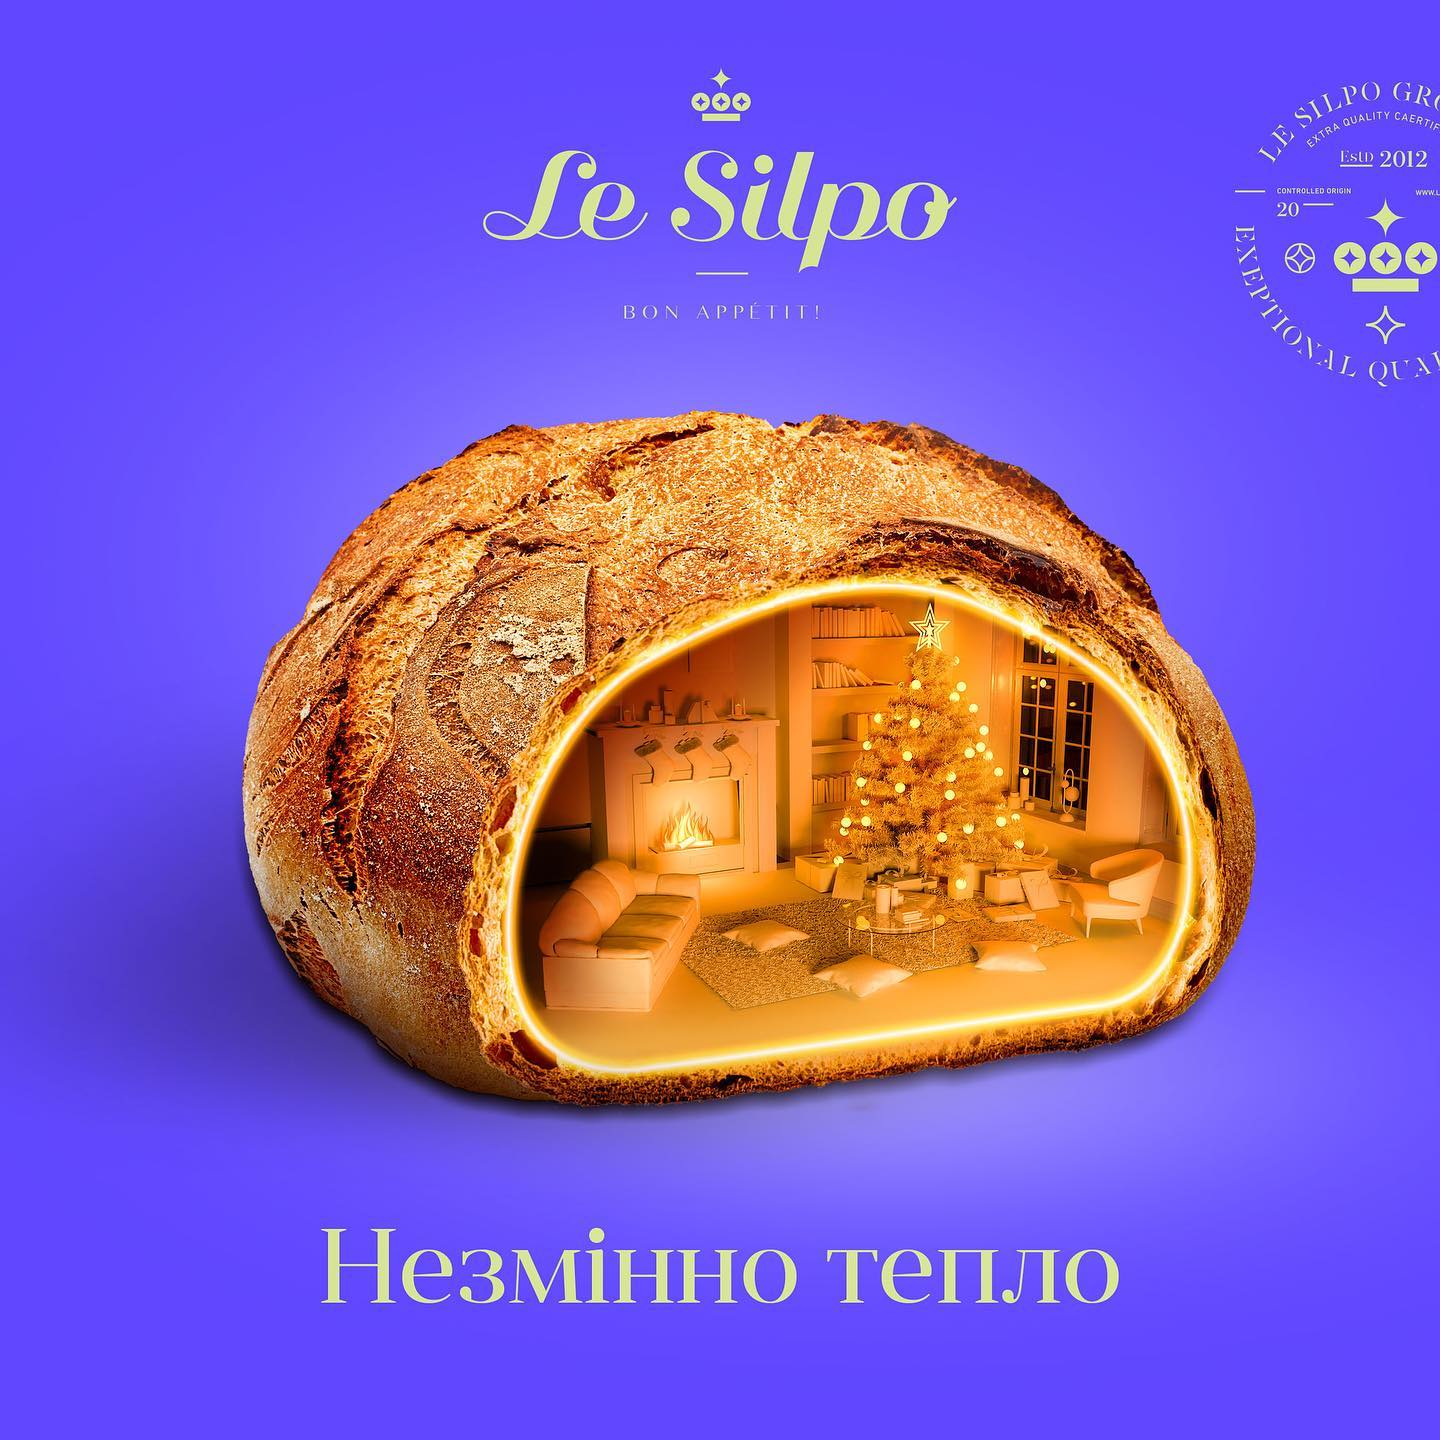 Le Silpo supermarkets campaign